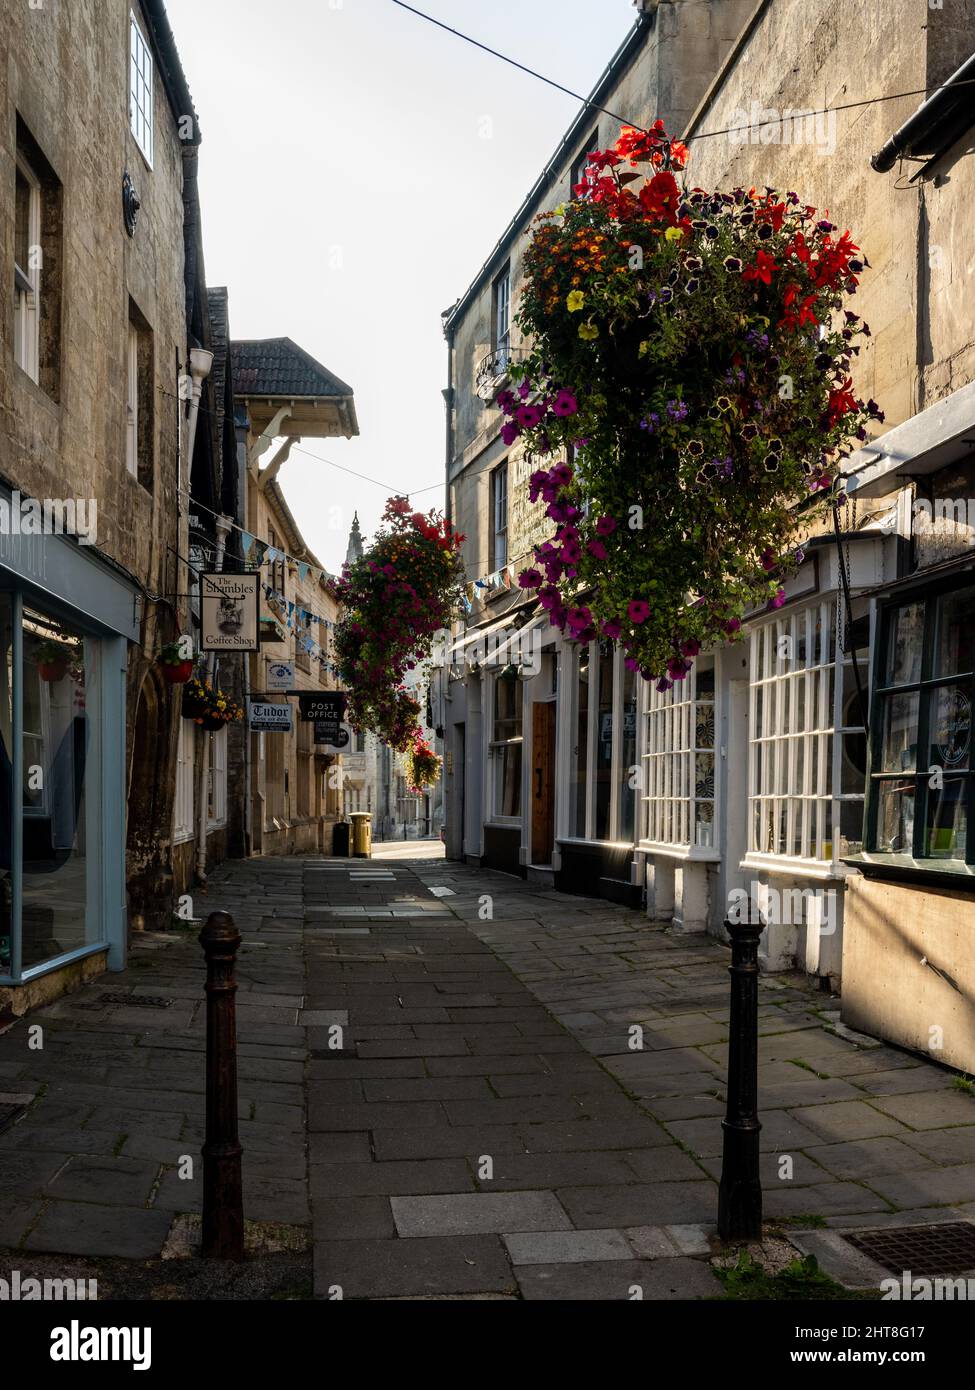 Cestas de flores decoran The Shambles, una calle tradicional de tiendas en Bradford-on-Avon, Wiltshire. Foto de stock